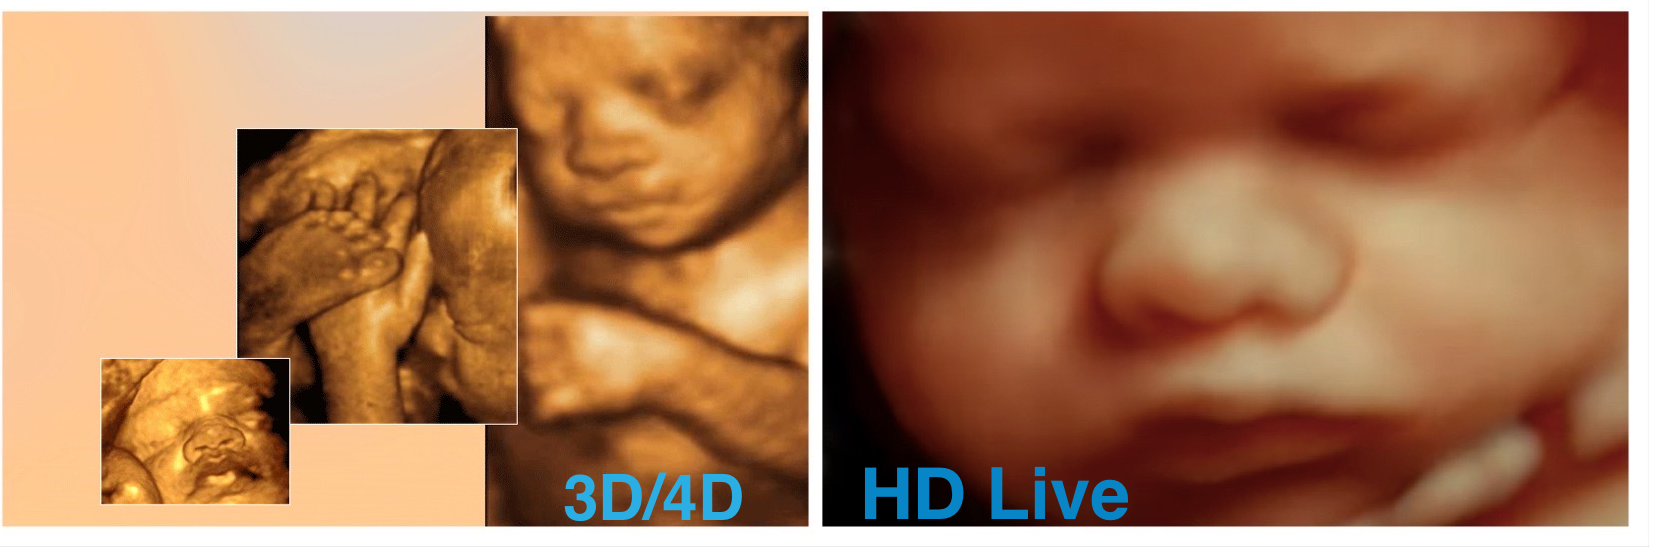 4D Ultrasound, 3D Ultrasound, 5D Ultrasound, HD Live Ultrasound